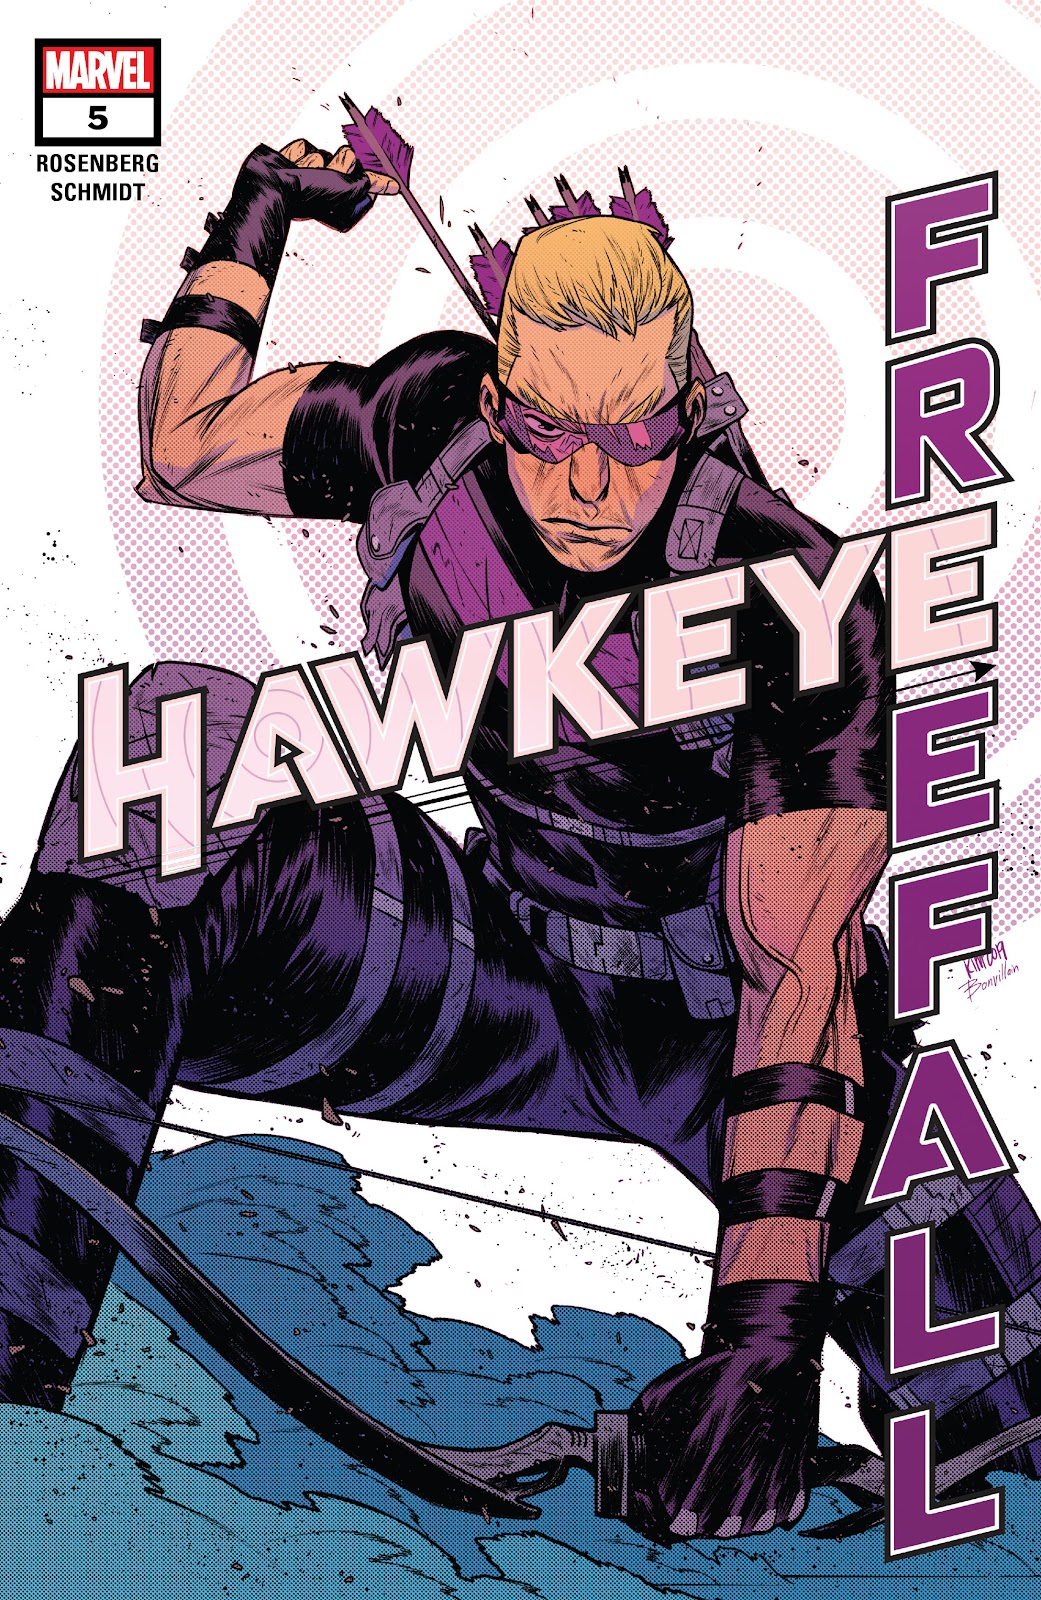 Hawkeye: Freefall issue 5 - Page 1